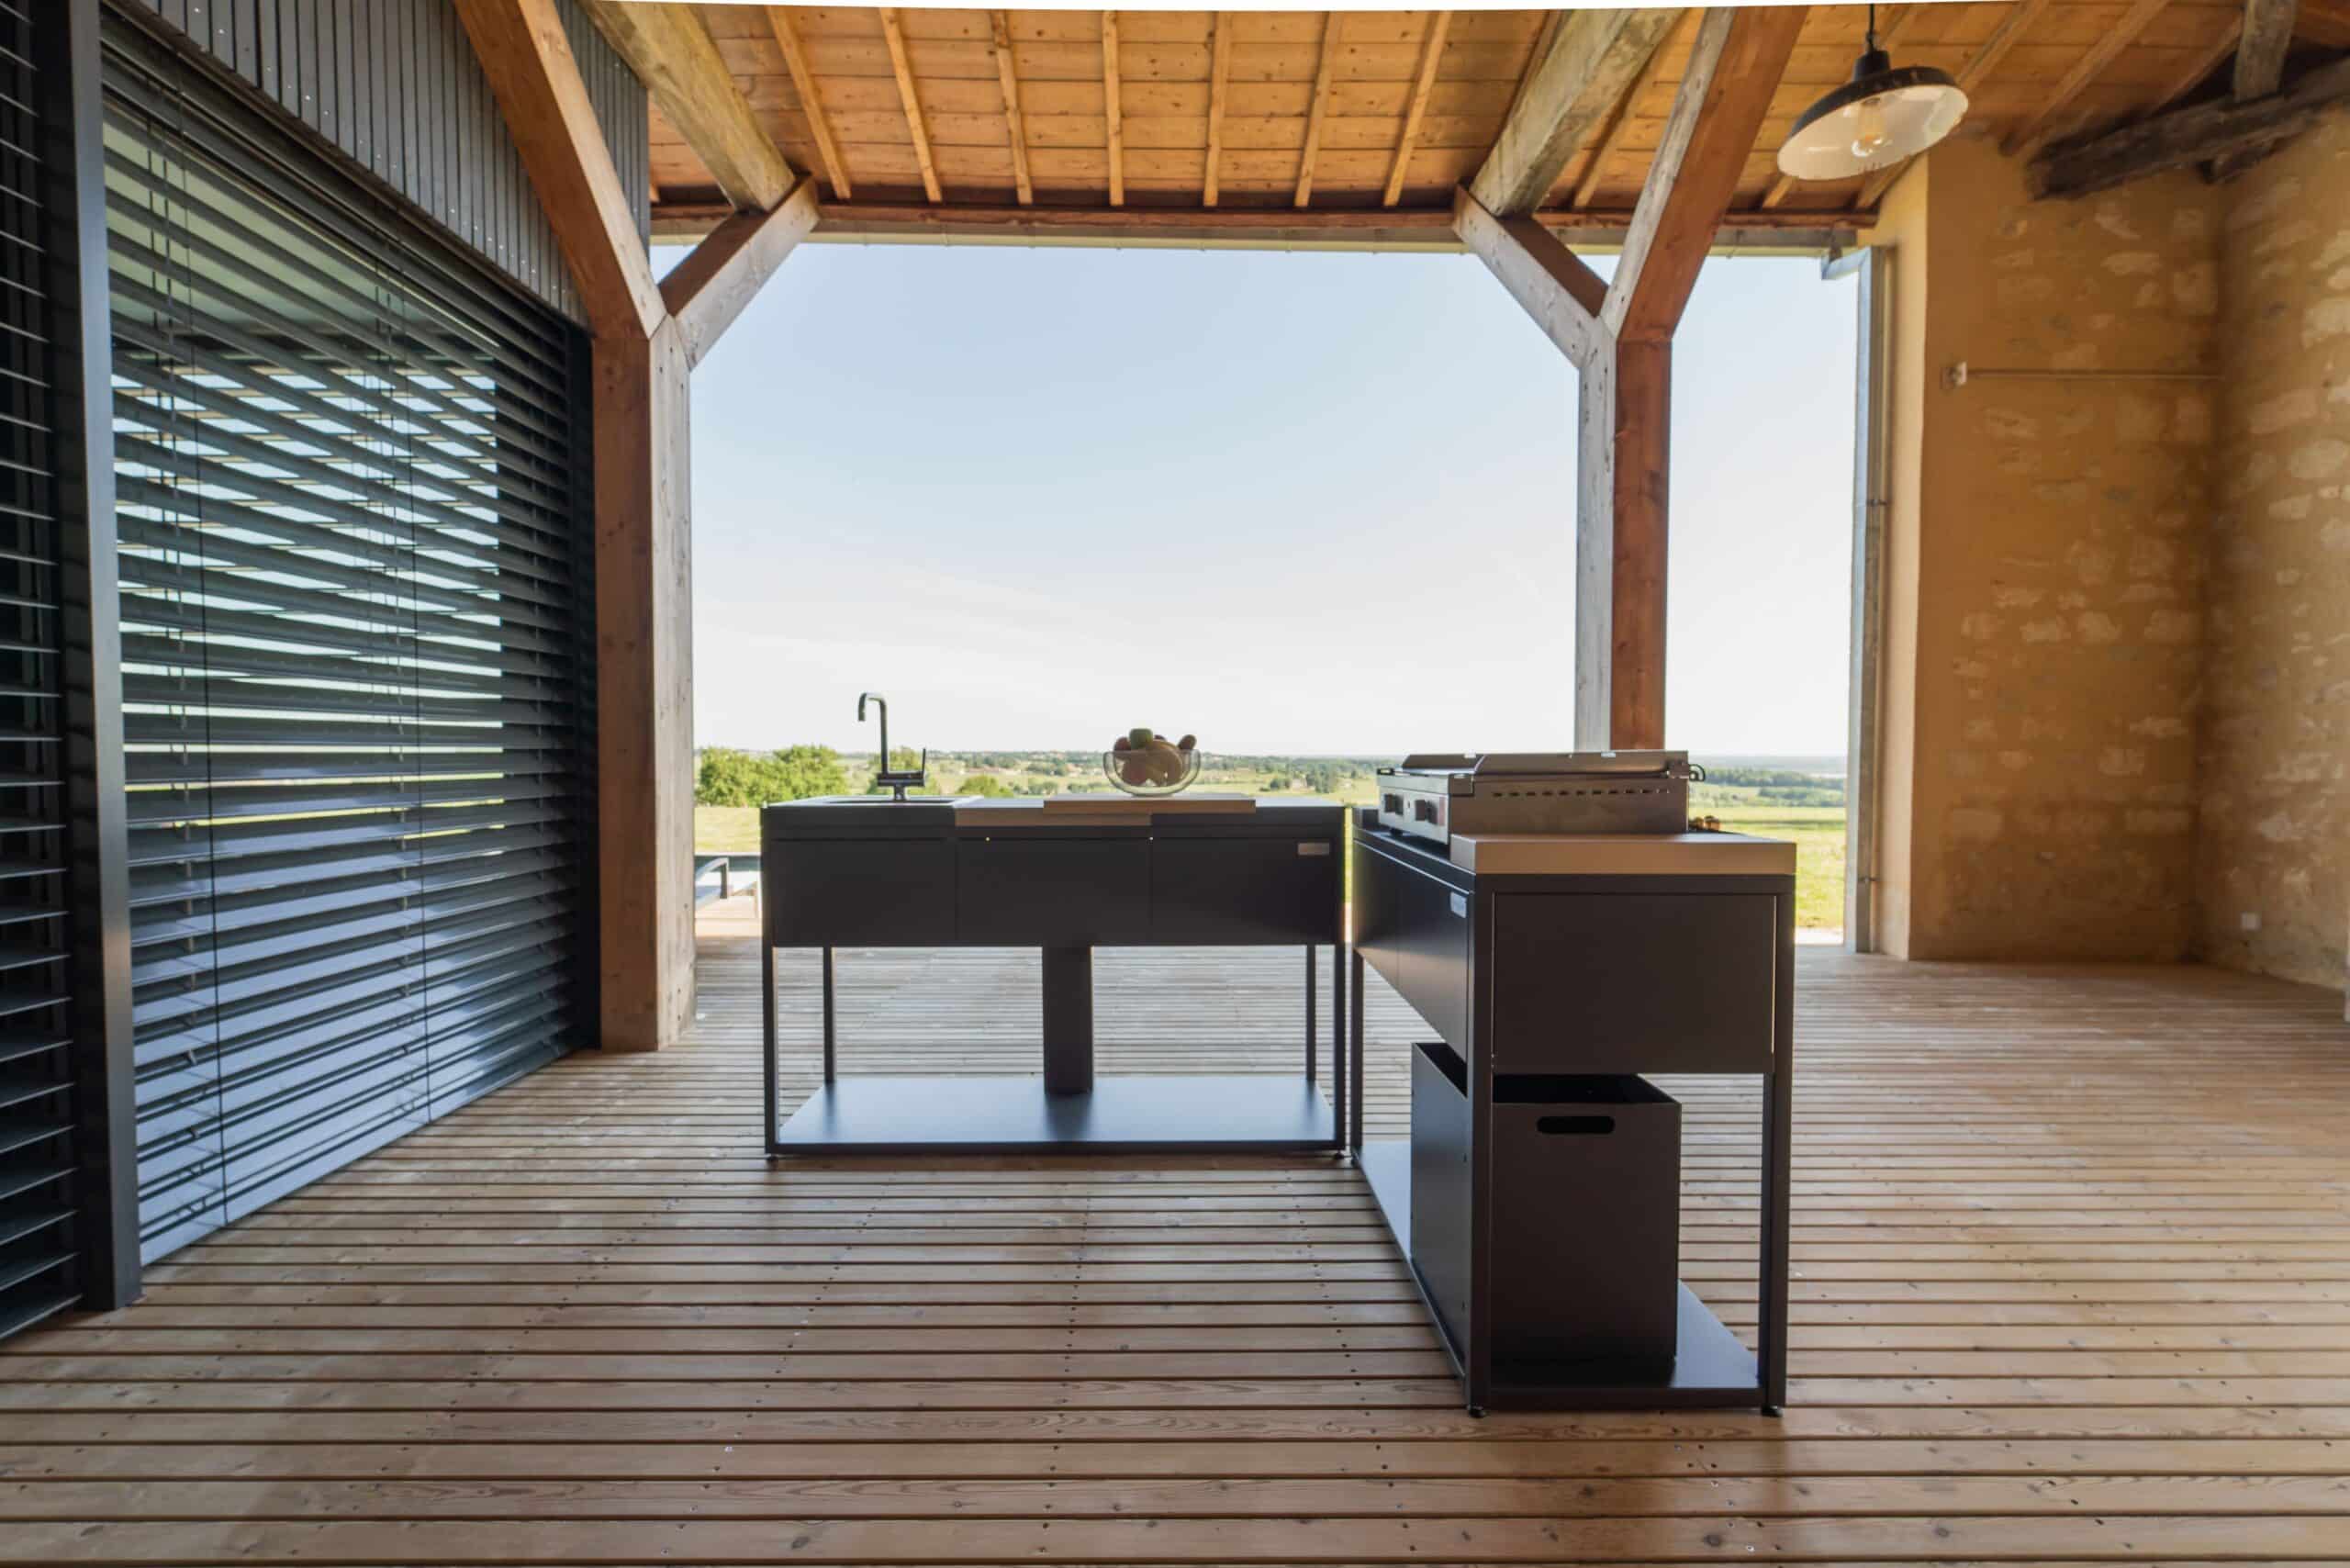 Deux modules de cuisine d'extérieur Soleil Carré positionnés sur une terrasse sous véranda. Disponible chez Inox Passion